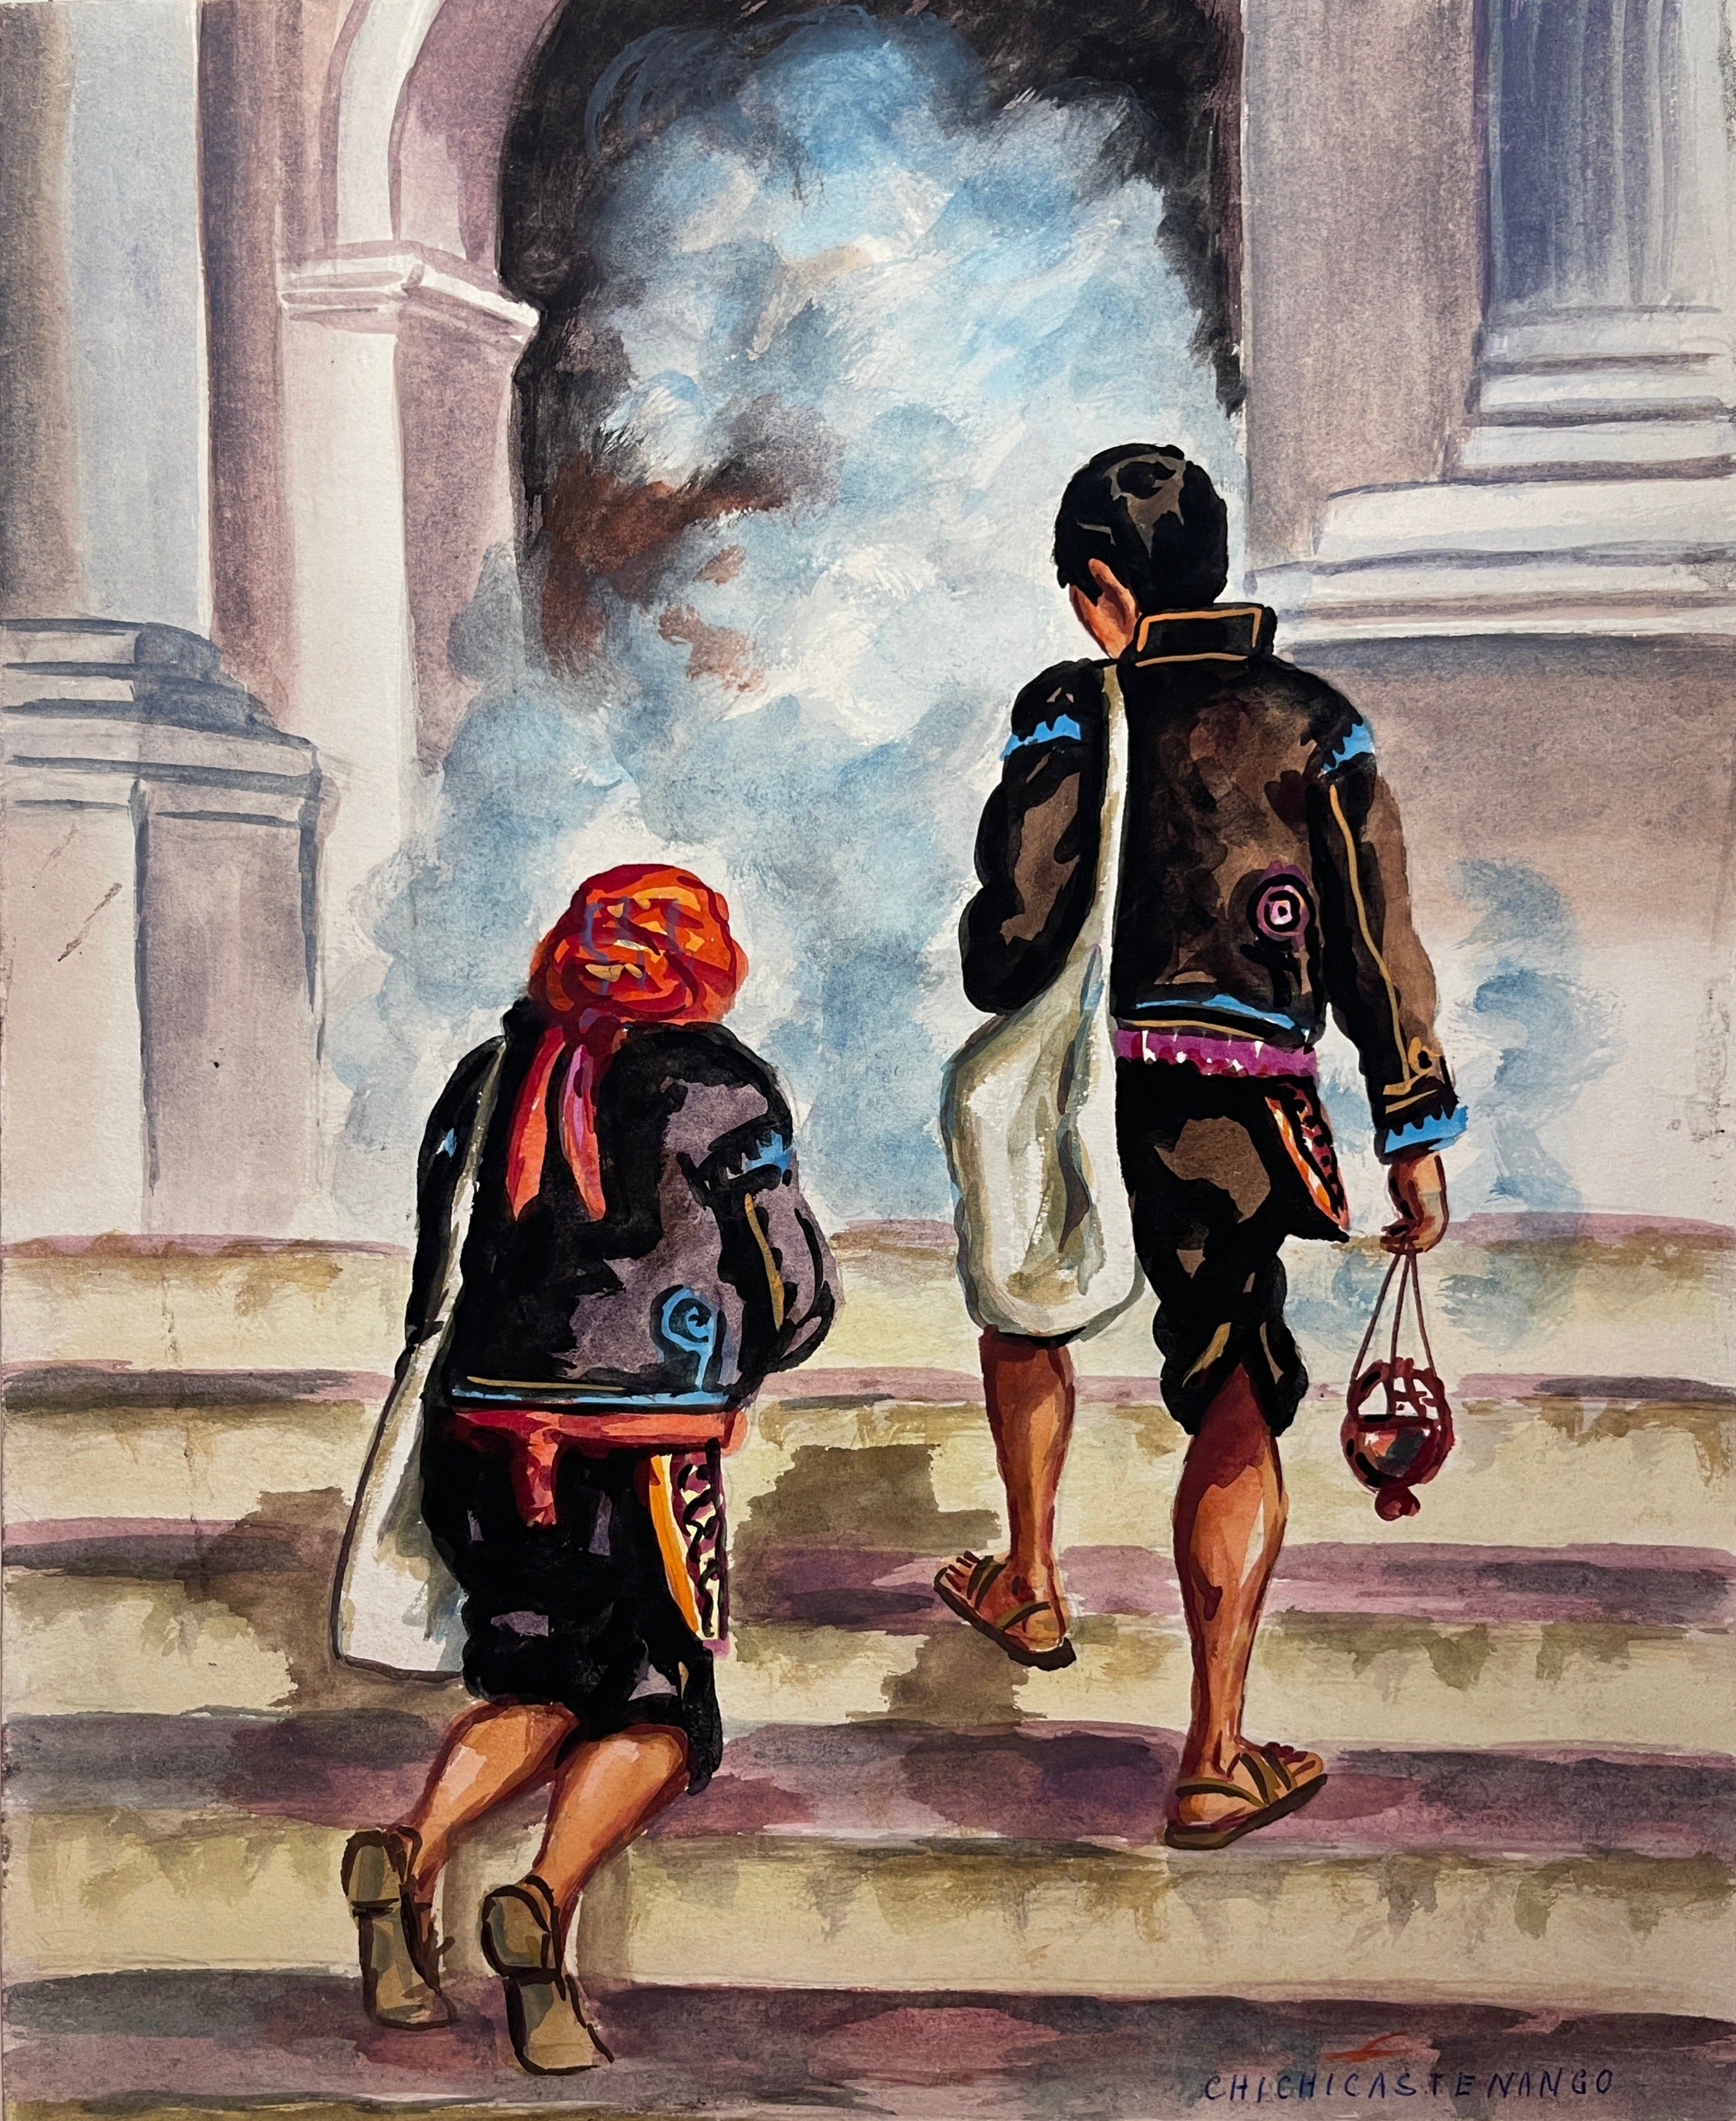 Maria Navas 1950 Signed Watercolor Painting - 2 Mayan People At Temple at Adirondack Retro